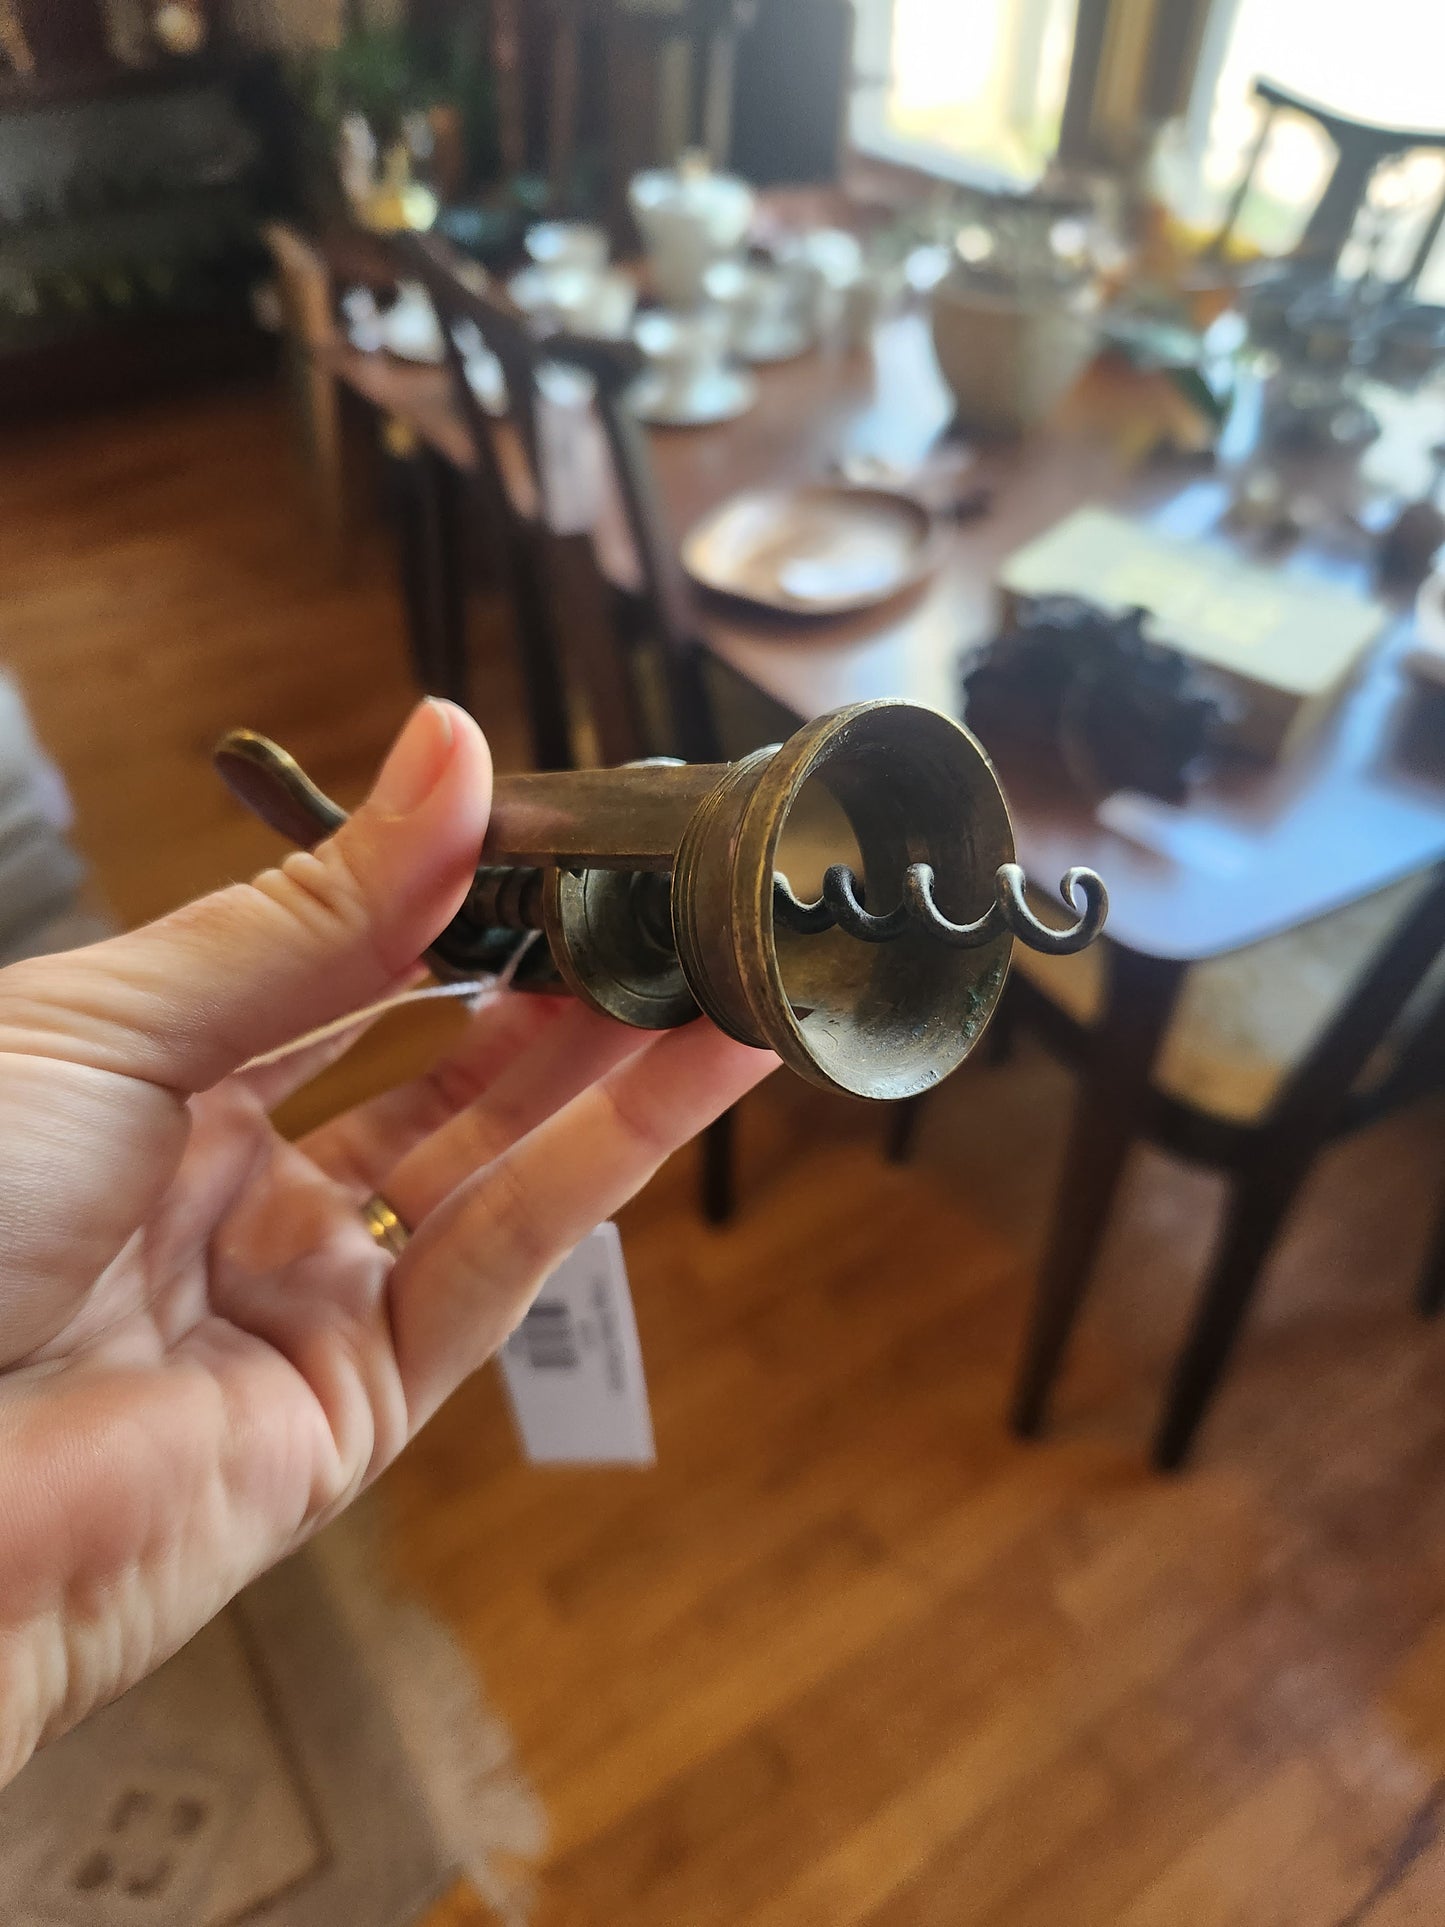 Vintage Brass Corkscrew